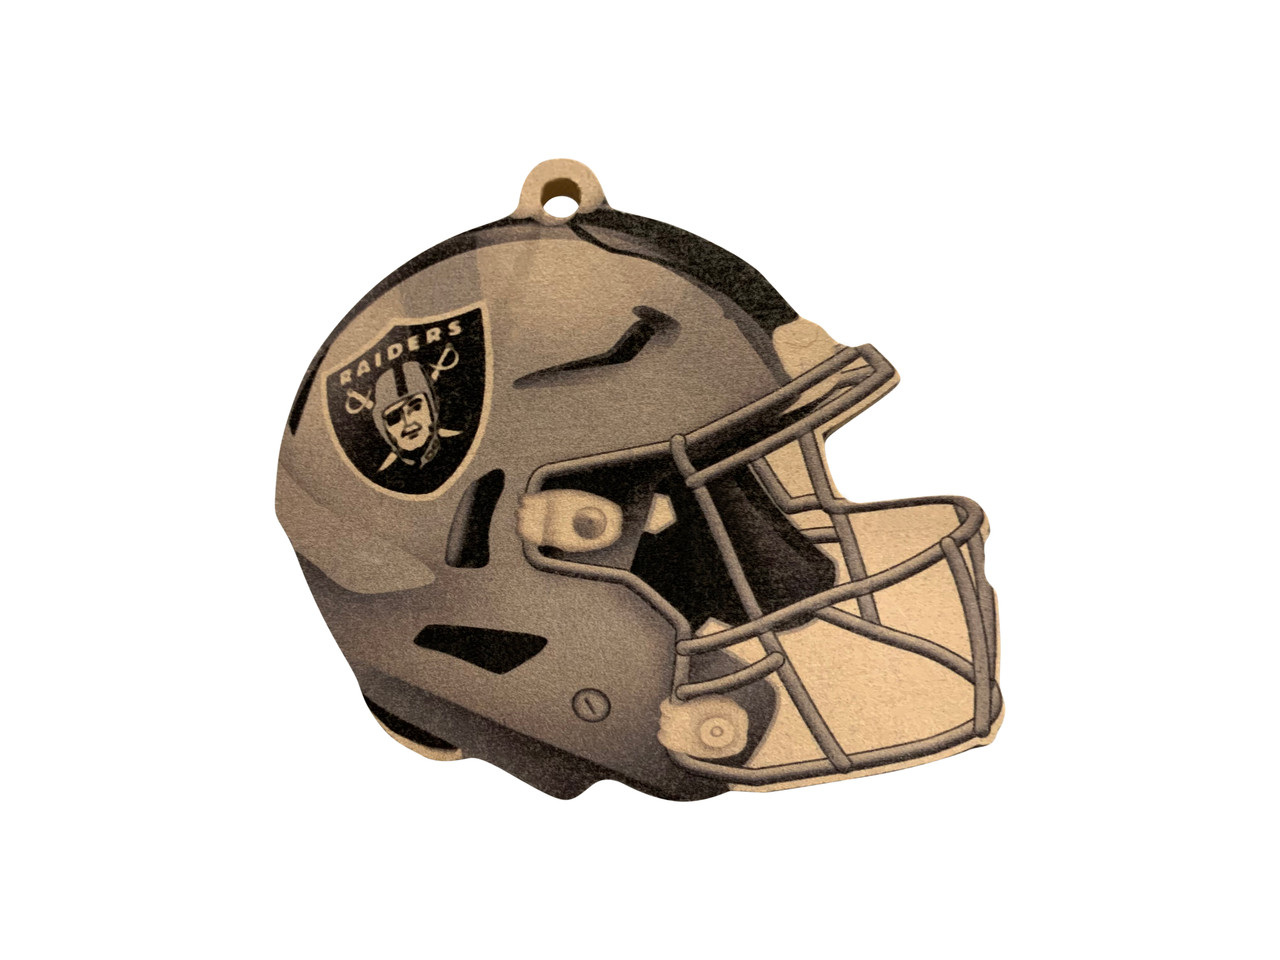 NFL Las Vegas Raiders 24 oz. Football Shaped Mug